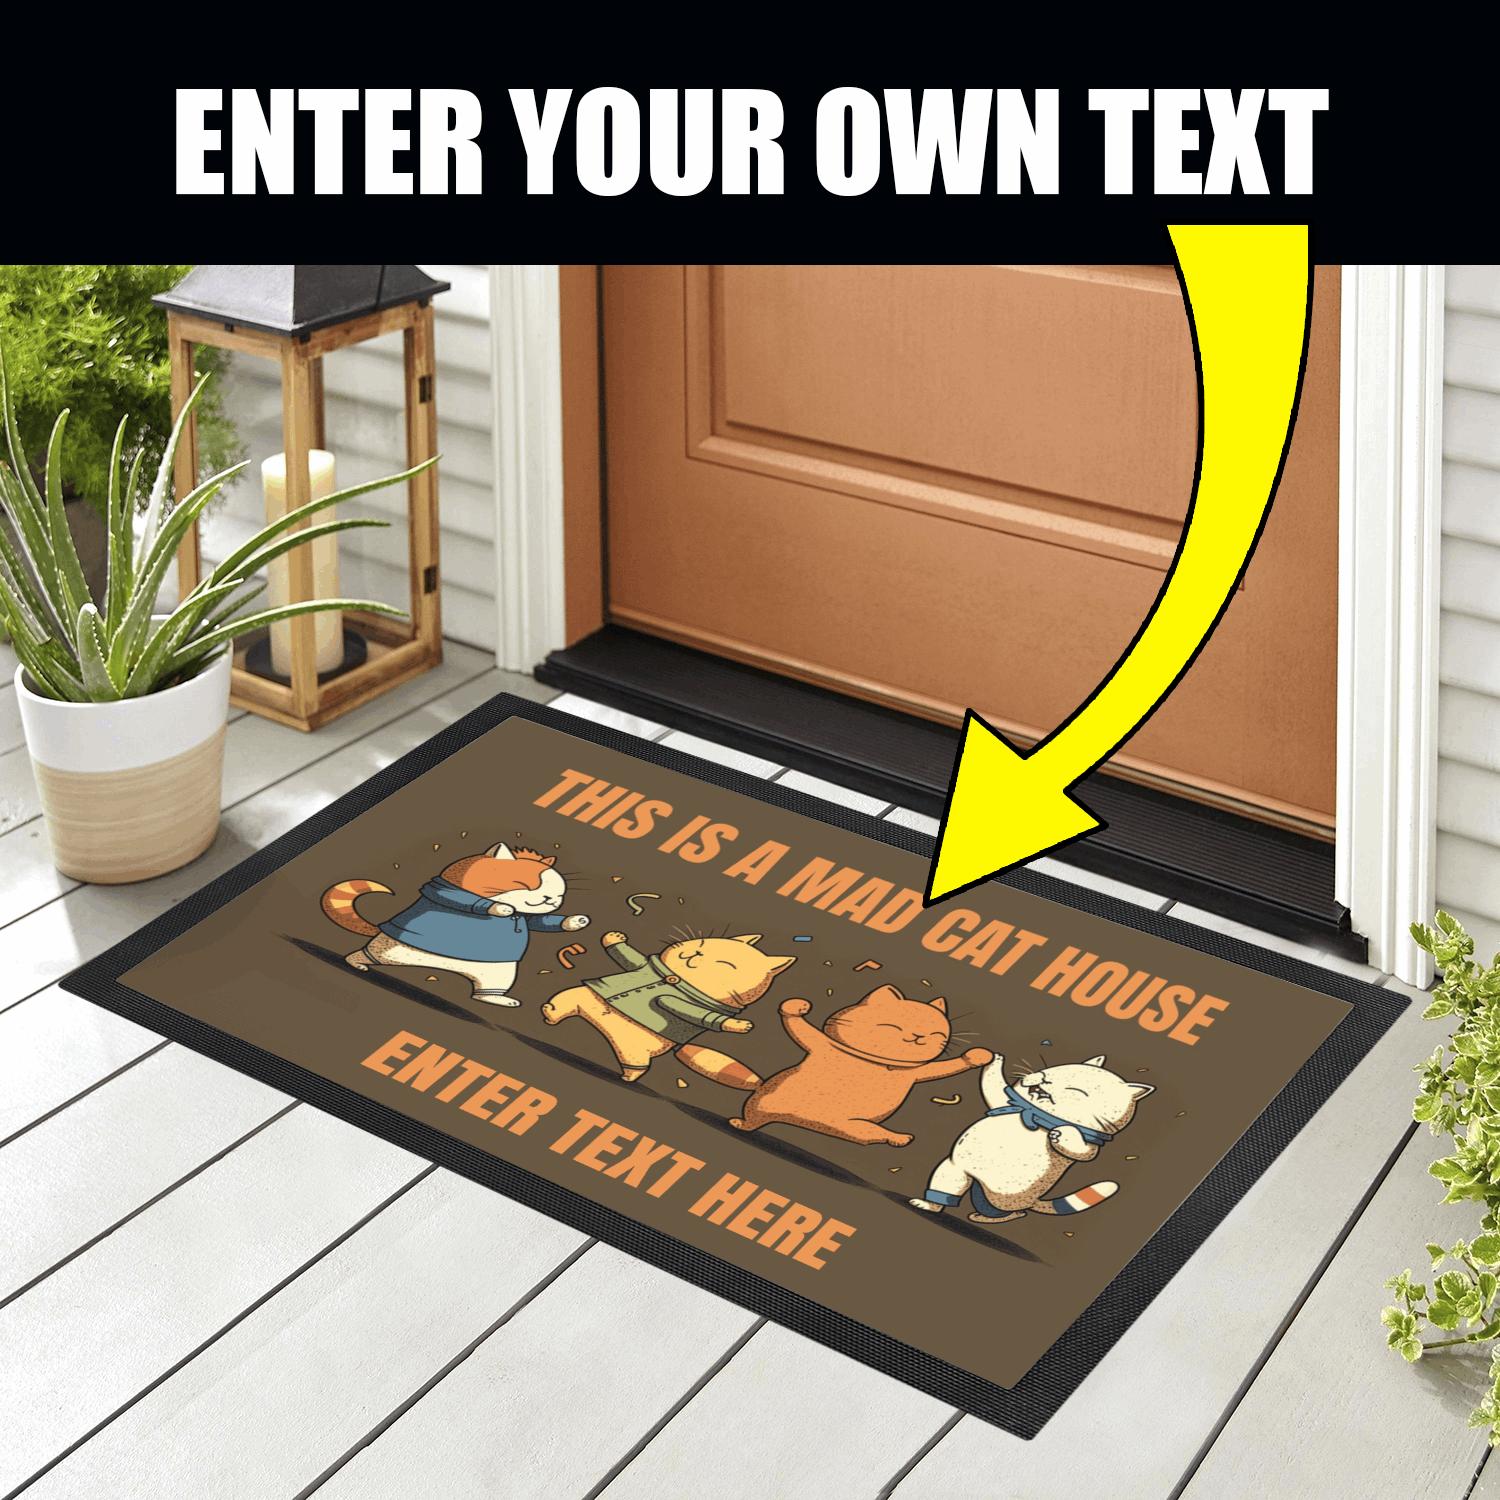 Personalized Doormat - Custom Doormat - Mad Cat House 